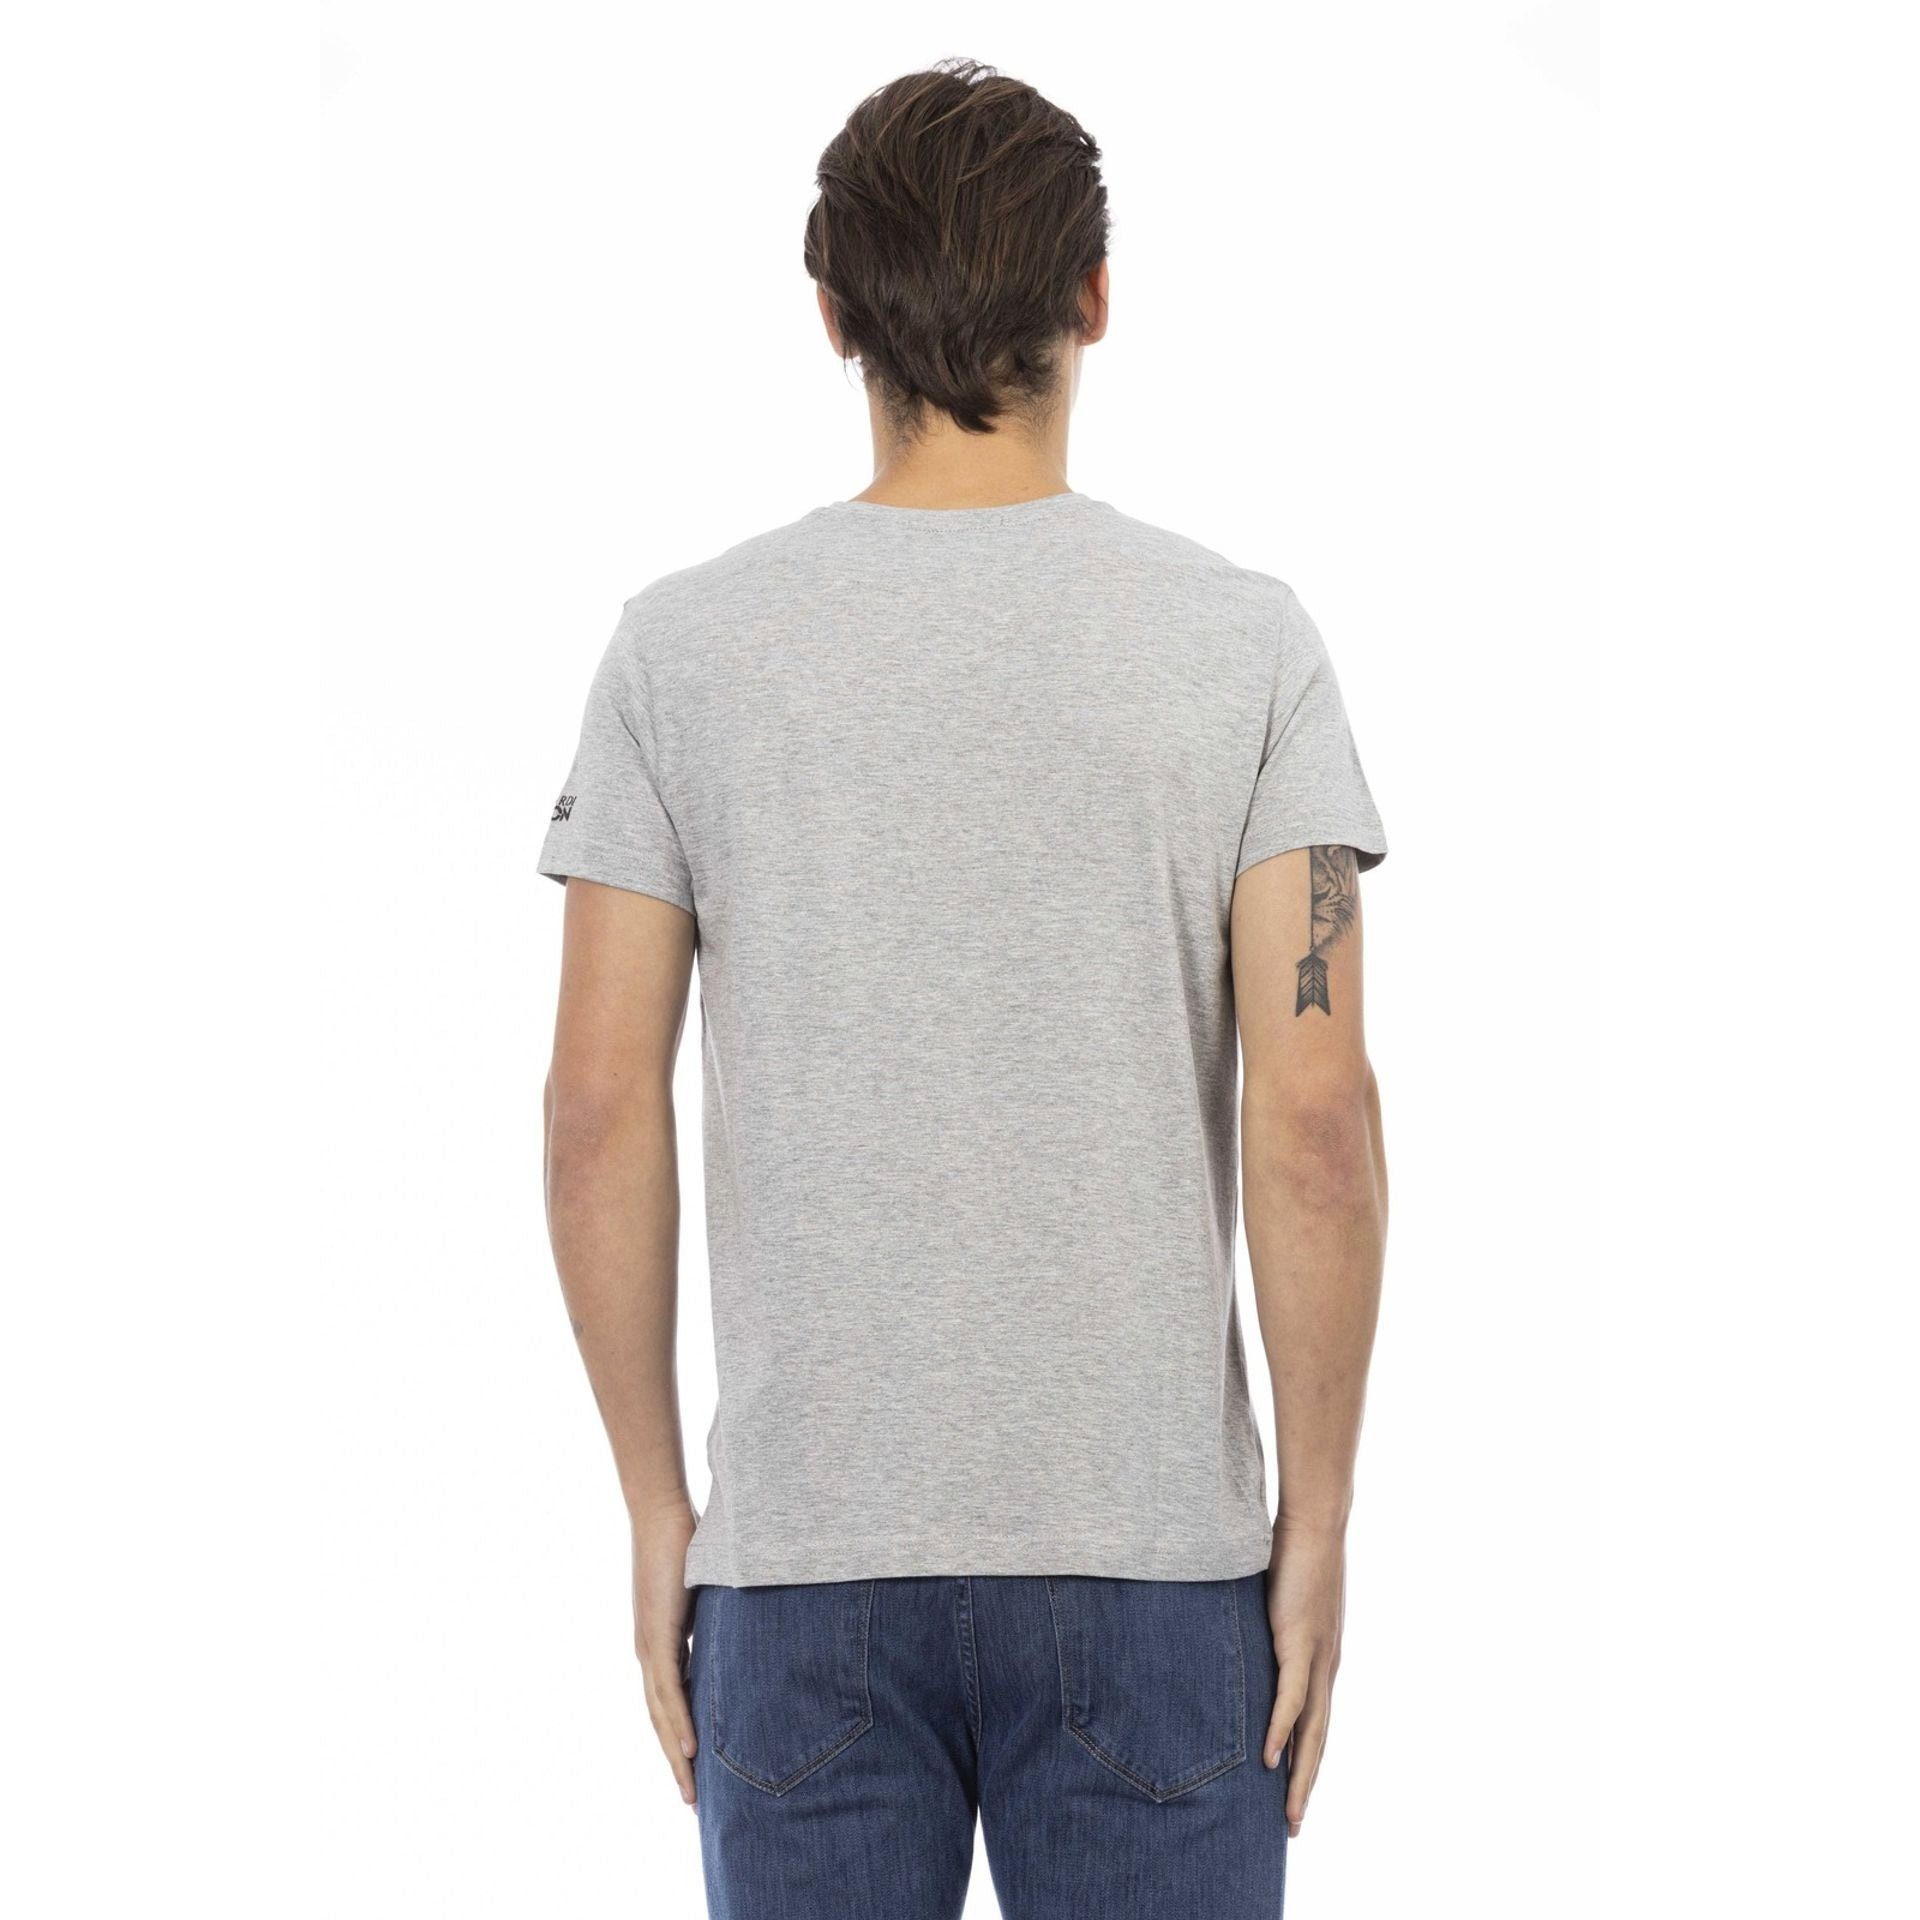 Note subtile, Trussardi Grau T-Shirts, sich Logo-Muster das stilvolle Trussardi Action das aber durch verleiht aus, zeichnet Es T-Shirt eine